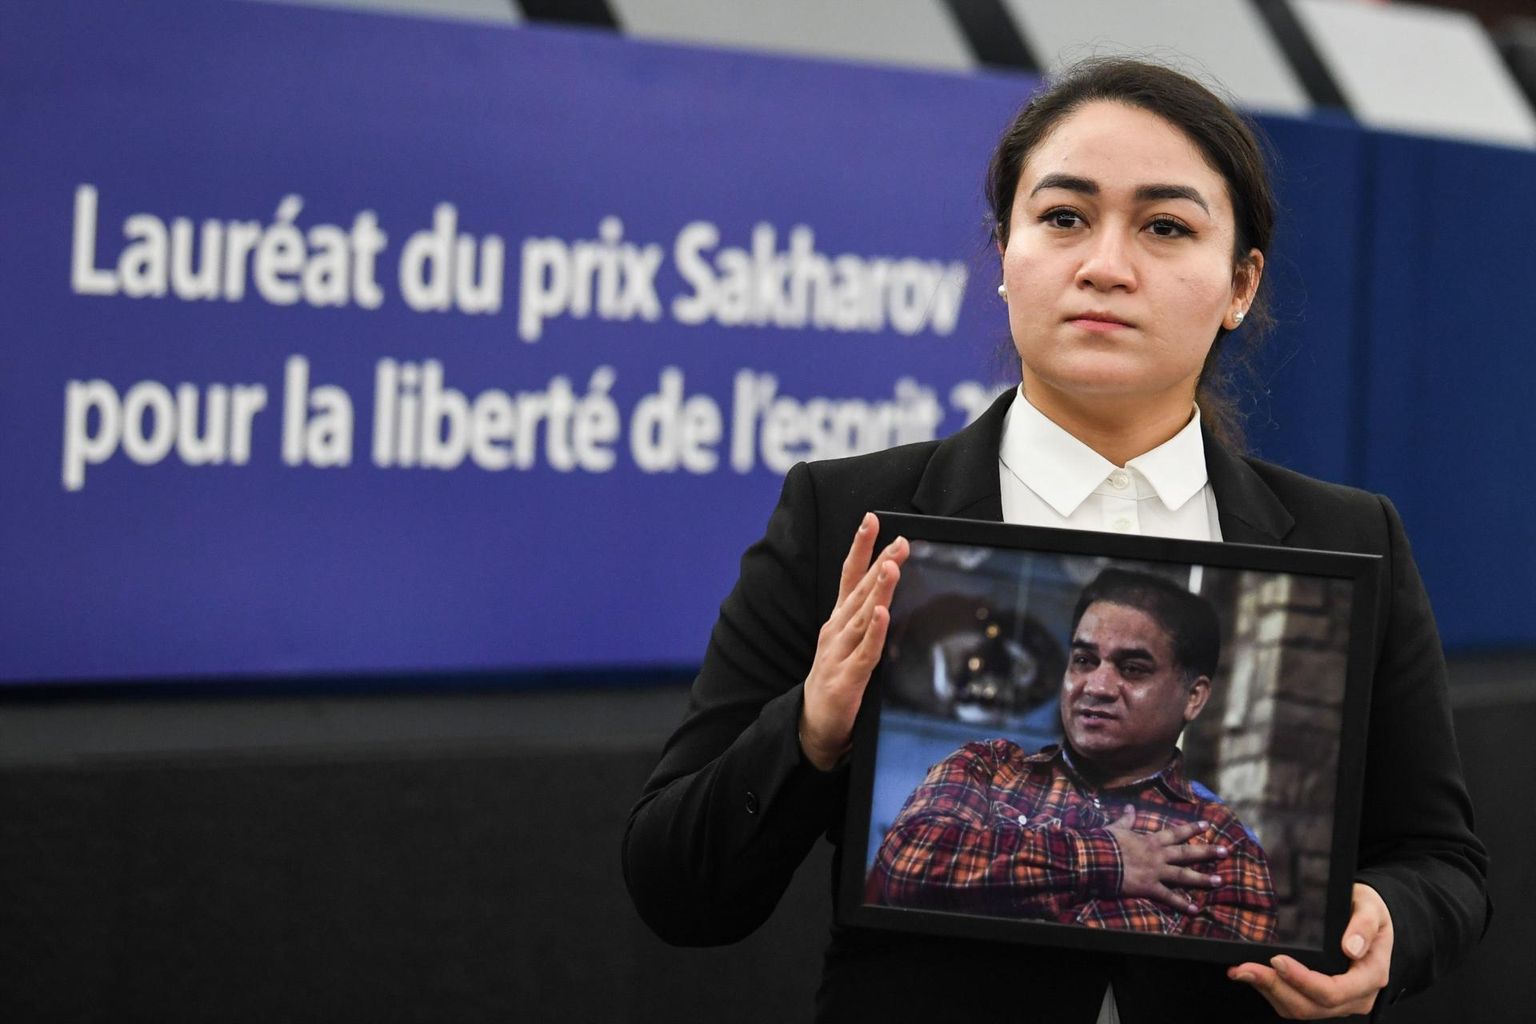 Hiinas vangistatud uiguuri majandusteadlase ja inimõiguste aktivisti Ilham Tohti tütar Jewher Ilham isa pildiga Strasbourgis Euroopa Parlamendi ees Sahharovi mõttevabaduse auhinda vastu võttes. Tohti saatuse kohta pole midagi teada alates 2017. aastast. 